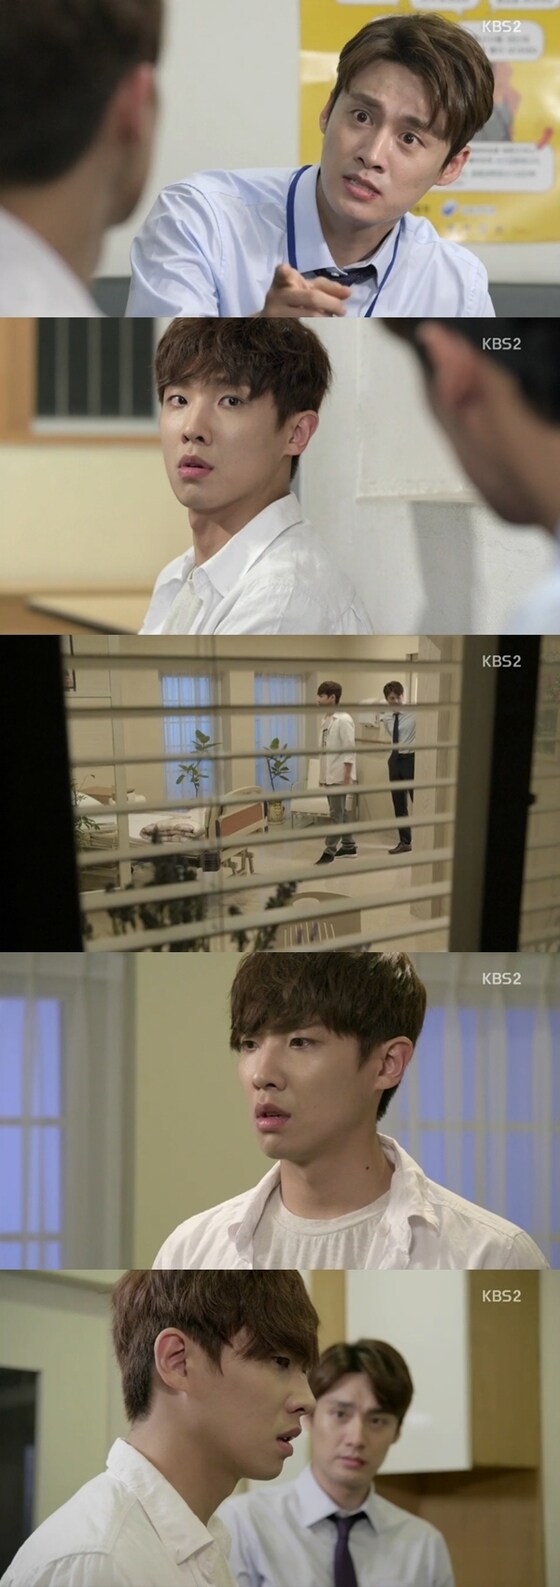 ´귀신은 뭐하나´ 조수향이 생전 알츠하이머 환자였던 것으로 밝혀졌다. © News1스포츠 / KBS2 ´귀신은 뭐하나´ 캡처